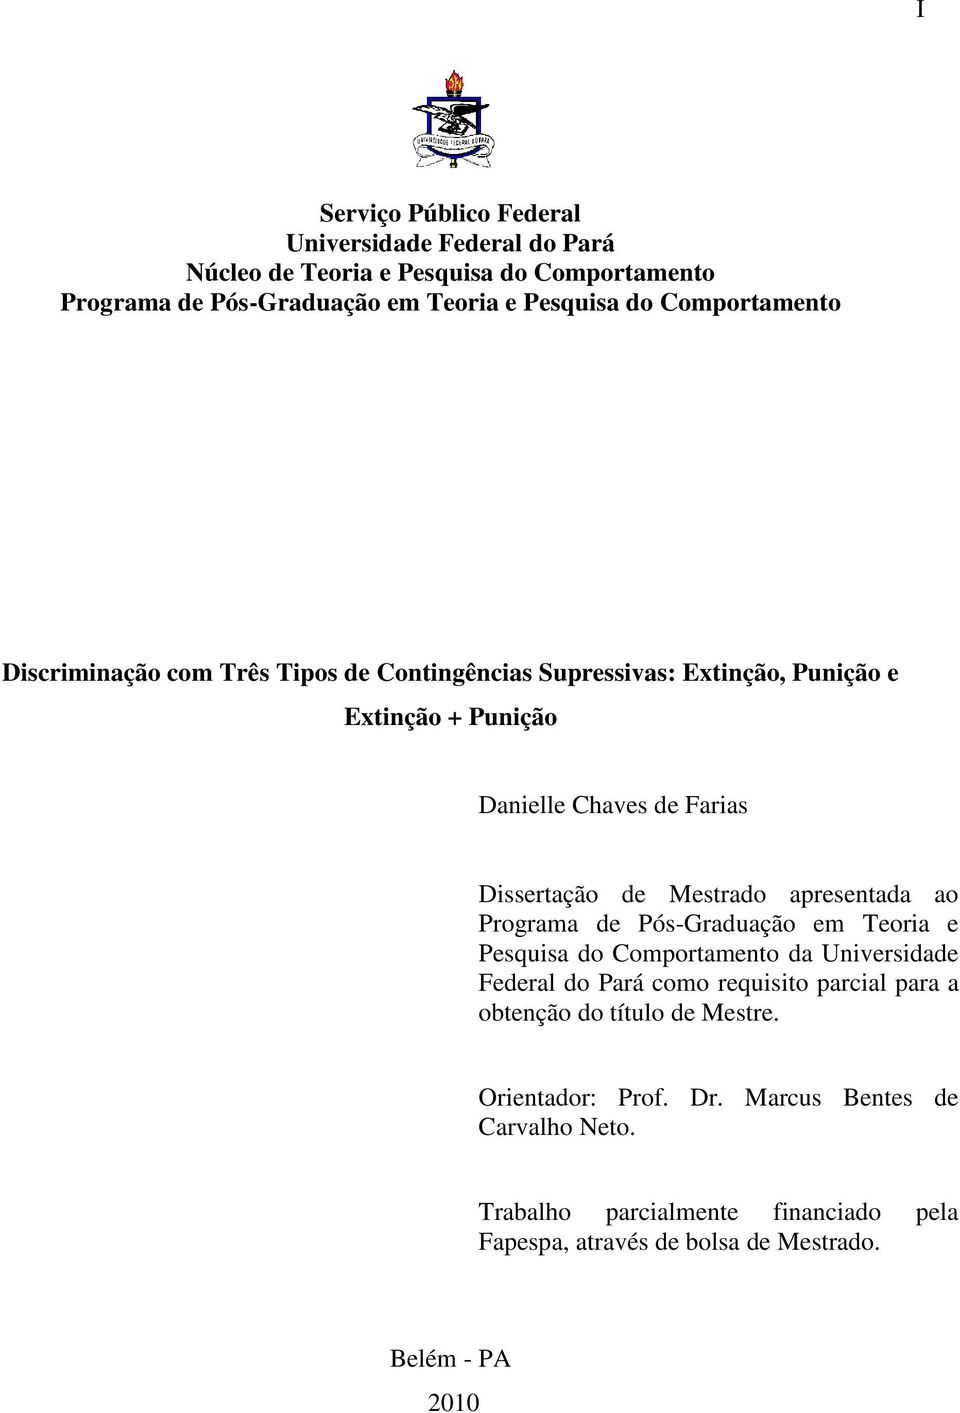 Mestrado apresentada ao Programa de Pós-Graduação em Teoria e Pesquisa do Comportamento da Universidade Federal do Pará como requisito parcial para a